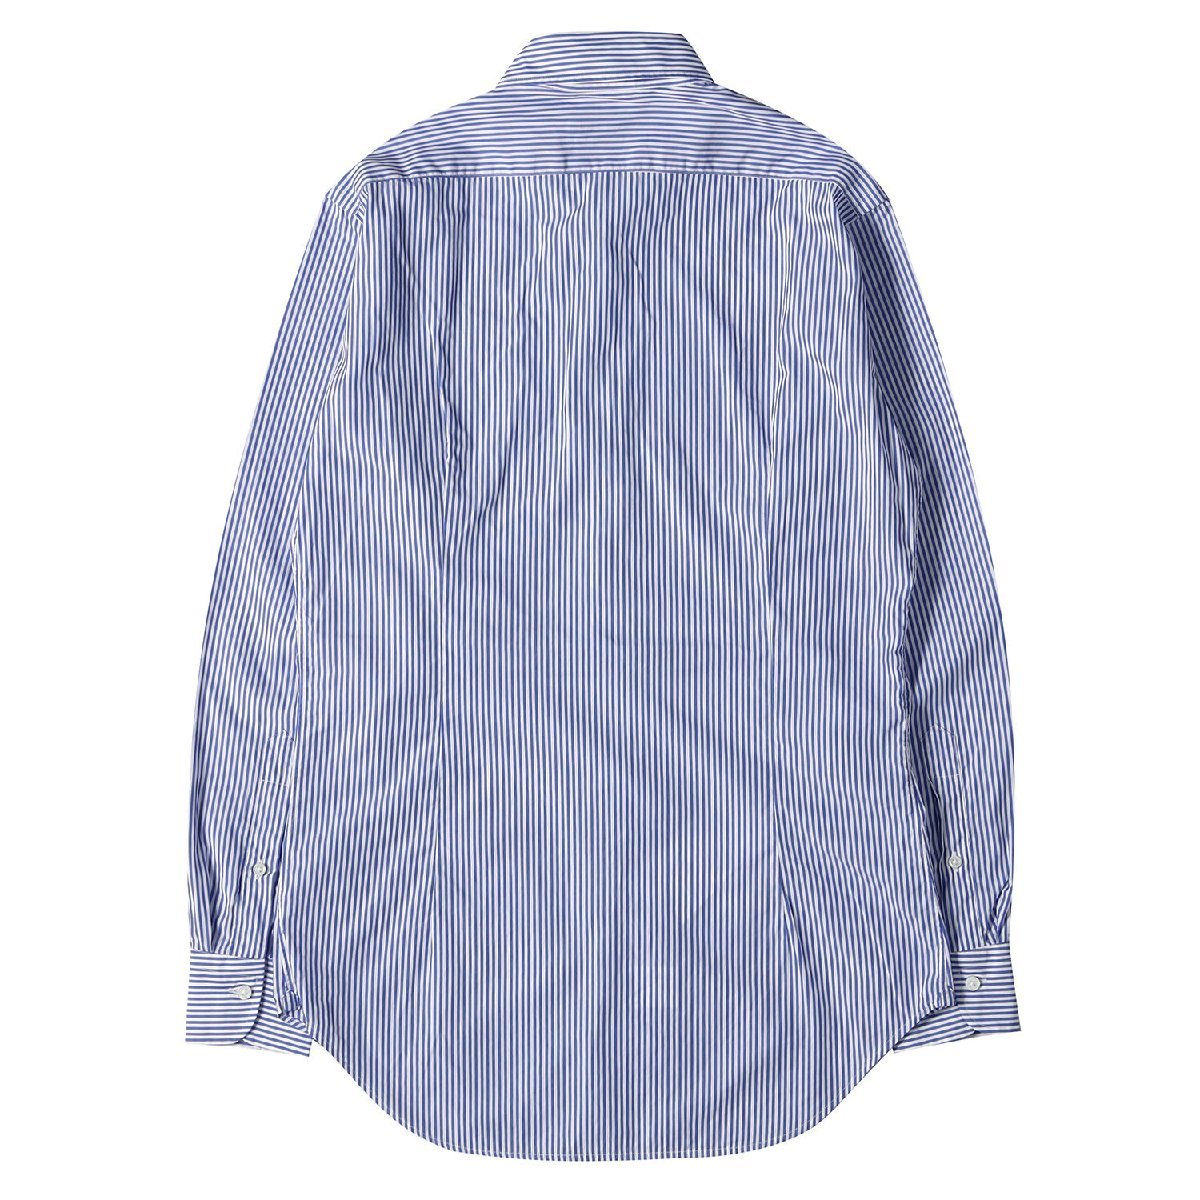 ARCODIO アルコディオ ストライプ コットン ワイドカラー ドレスシャツ カジュアル ビジネス オフィス フォーマル ブルー ホワイト 38_画像2